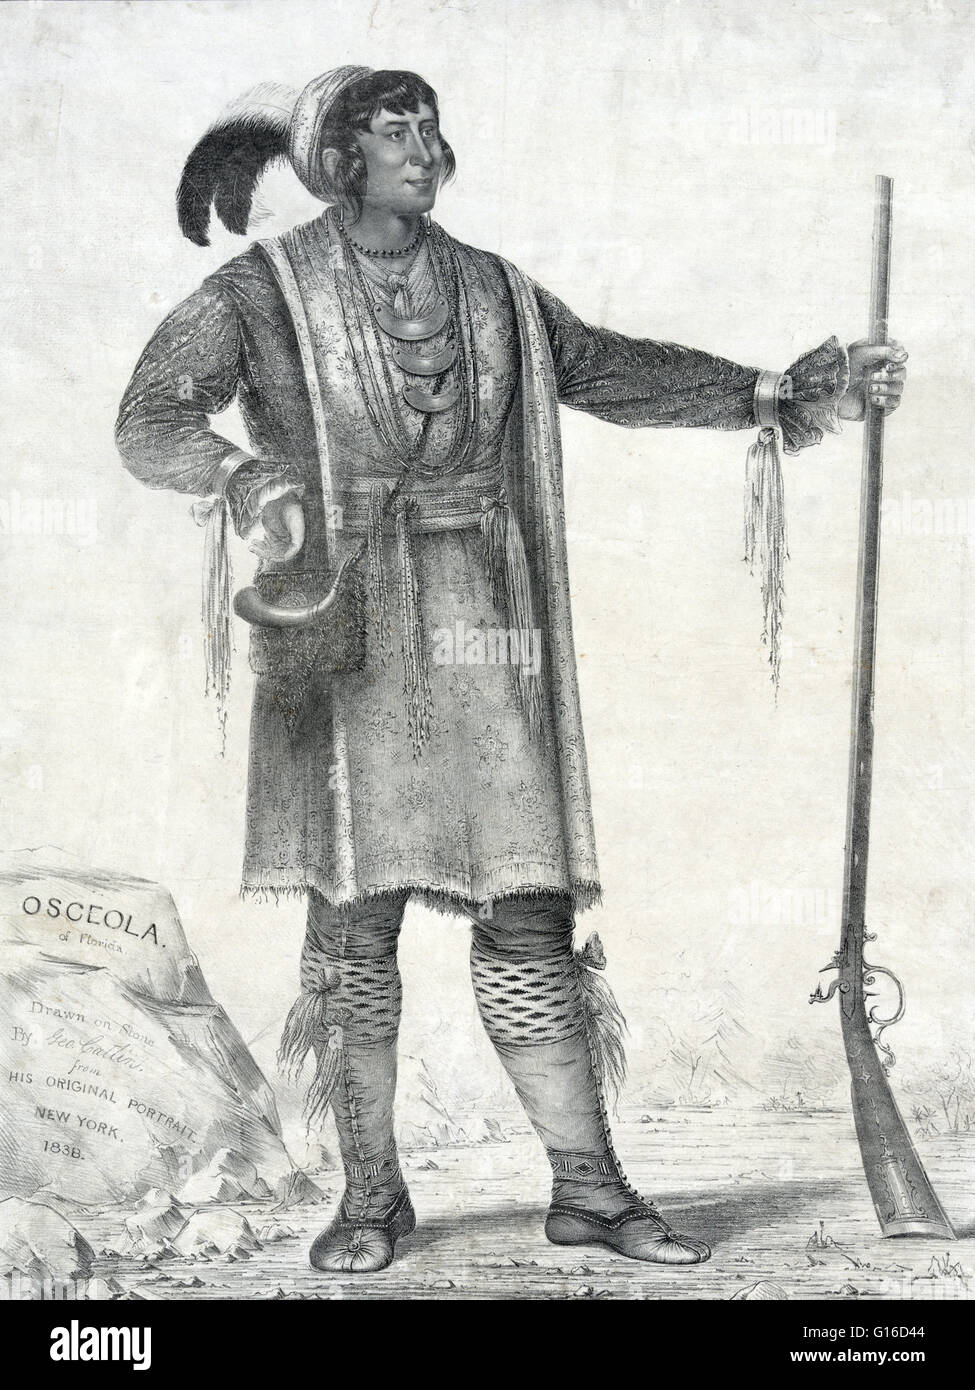 Osceola da George Catlin, litografia, dal suo ritratto originale, 1838. Osceola (1804 - 30 gennaio 1838), nato come Billy Powell, è diventato un leader influenti del Seminole in Florida. Misto di parentela, Creek, Scots-Irish e inglese, egli è stato sollevato come Foto Stock